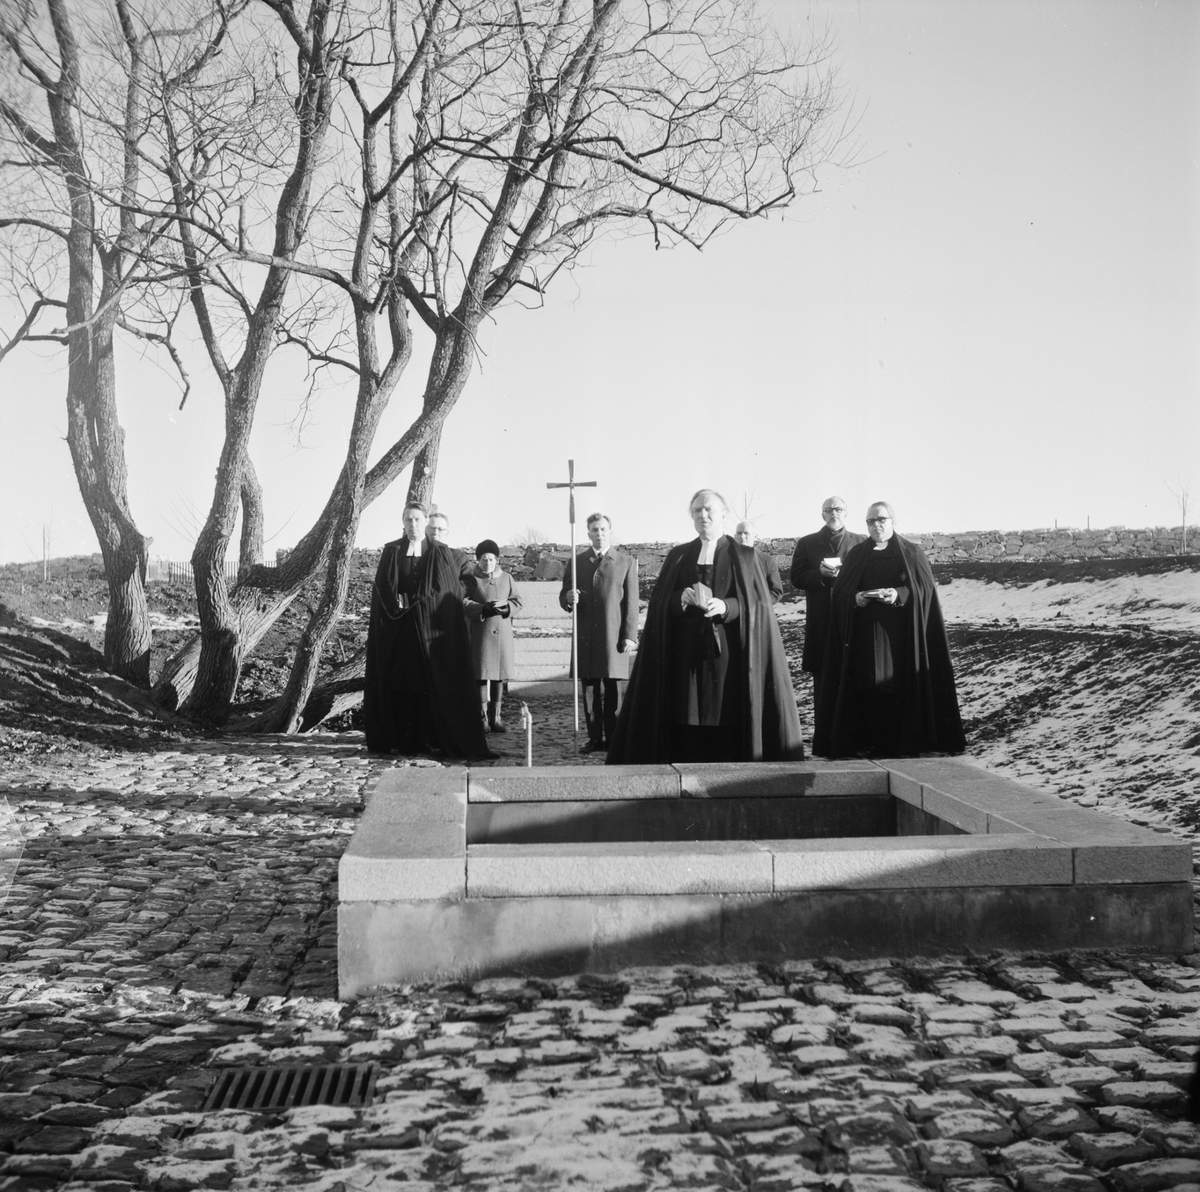 Invigning av utvidgad kyrkogård, Östervåla, Uppland 1971